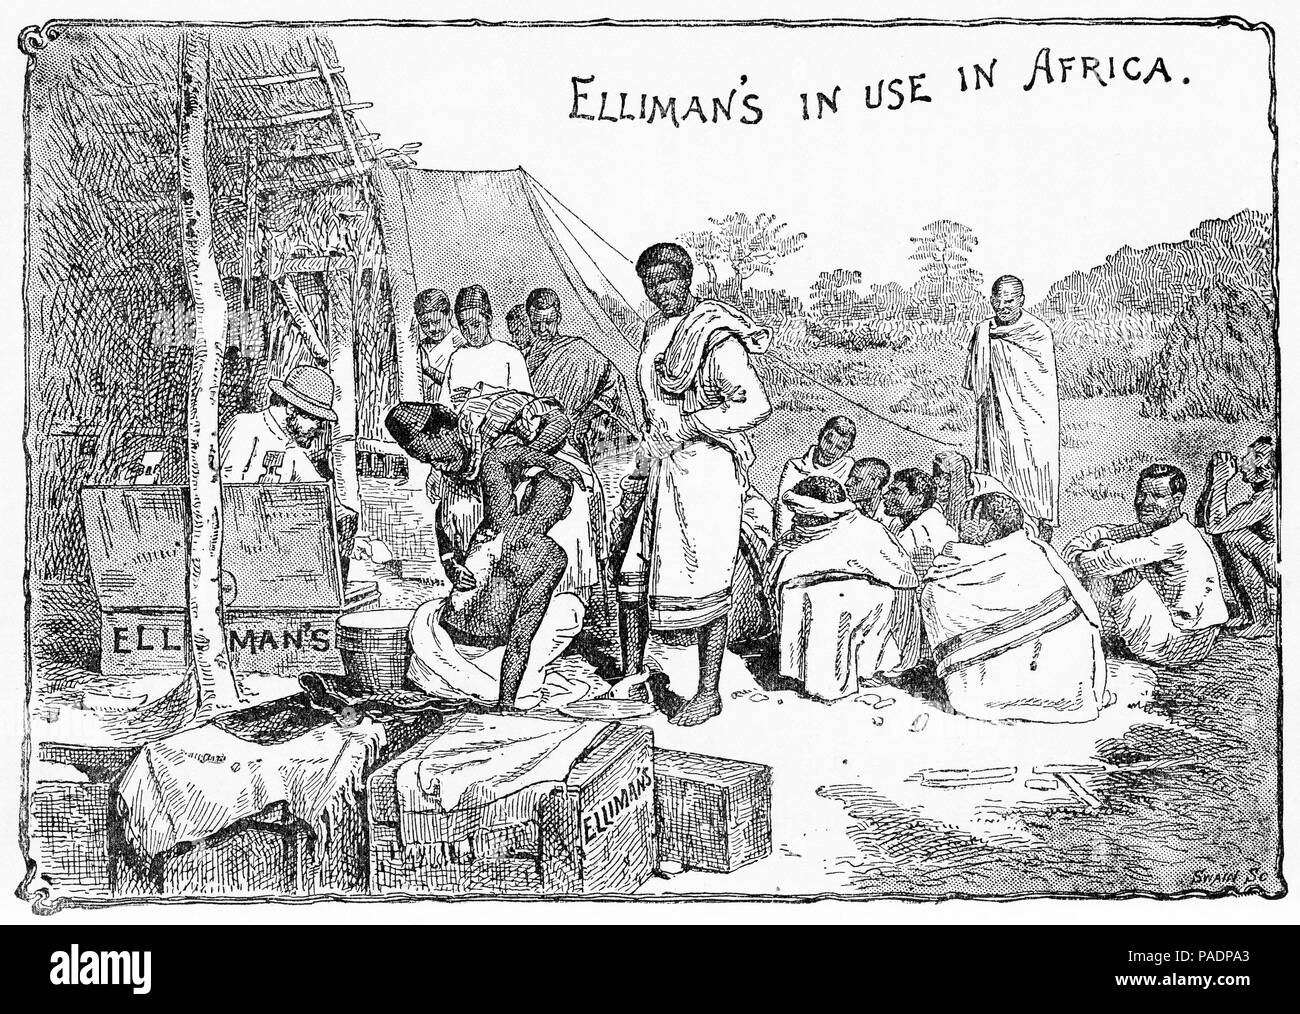 Gravure d'une publicité pour l'onguent, être Elliman utilisé pour traiter les patients en Afrique, 1903. Banque D'Images